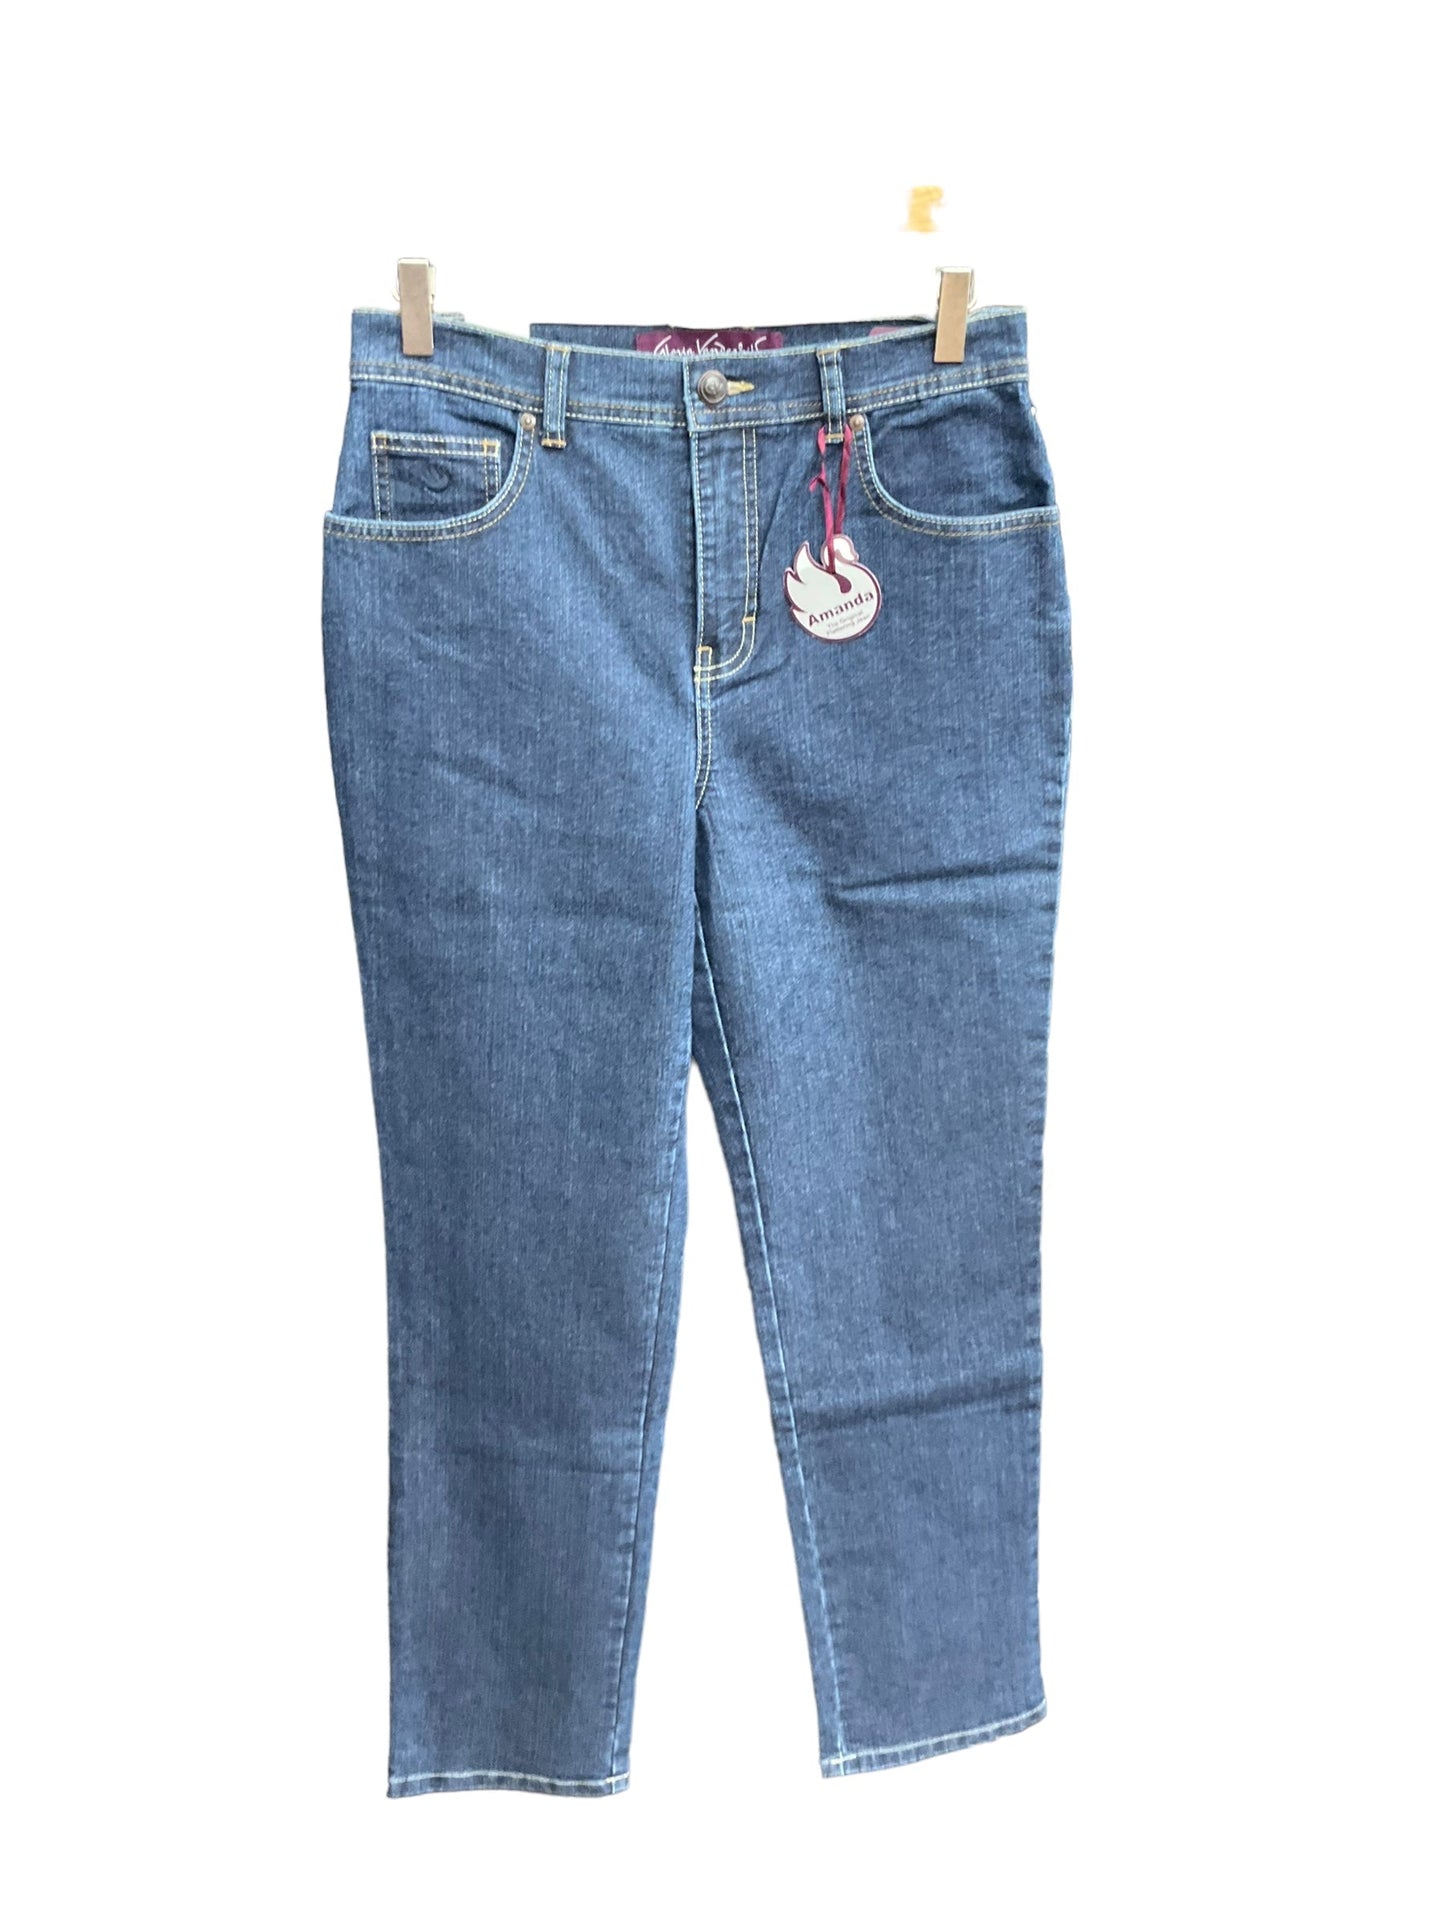 Blue Denim Jeans Boyfriend Old Navy, Size 6